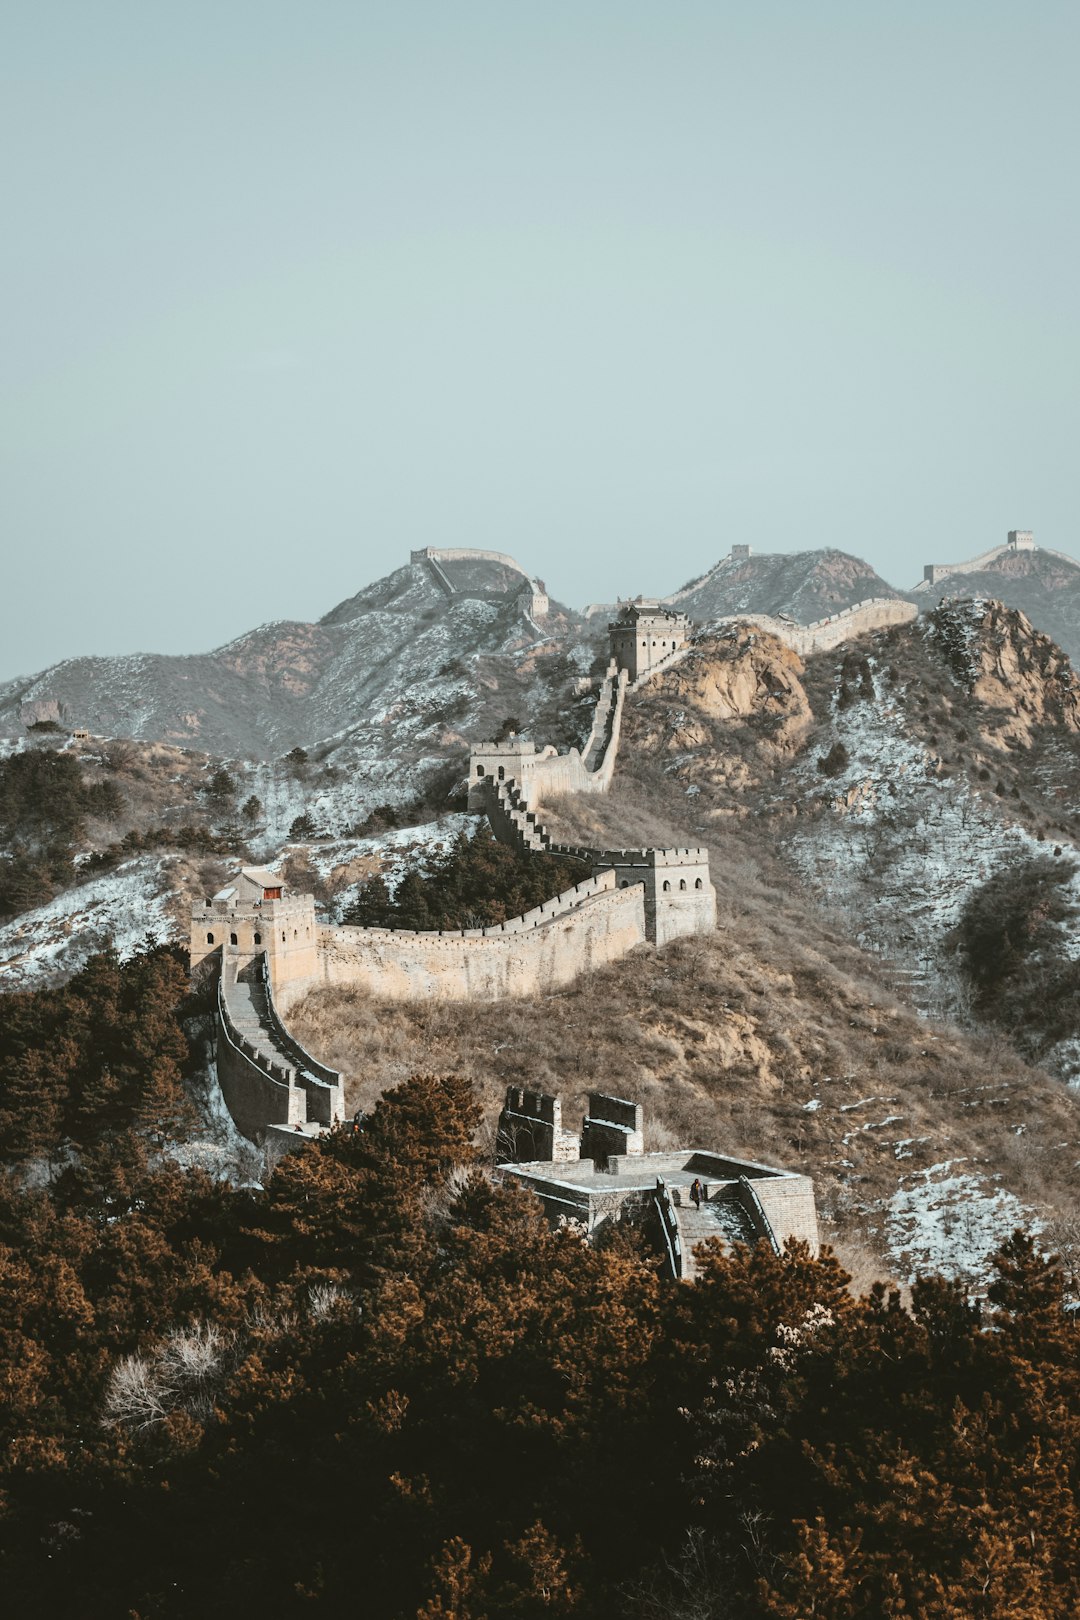 Hill station photo spot Great Wall China